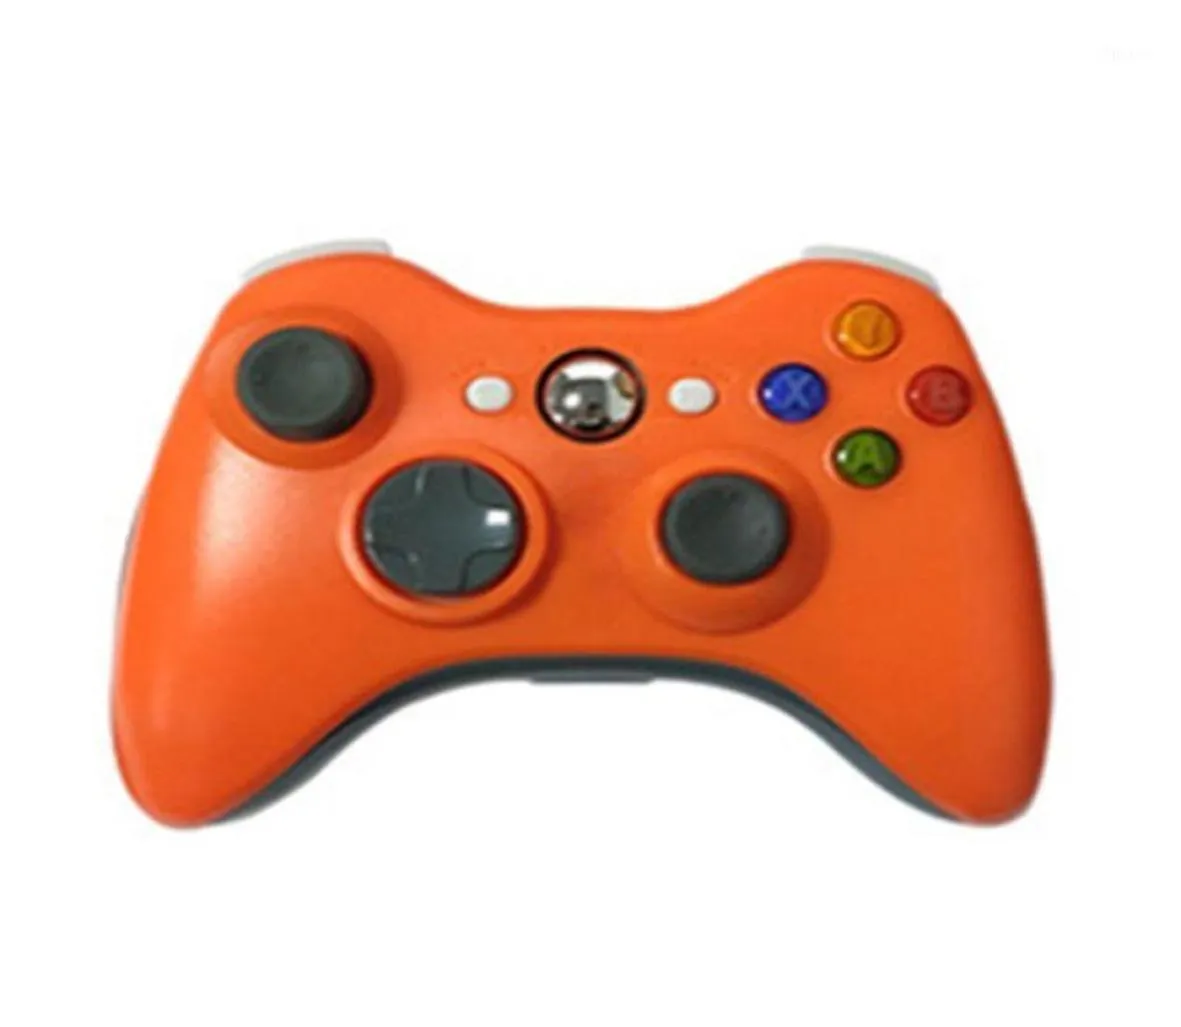 أدوات التحكم في الألعاب لأجهزة Xbox 360 24G اللاسلكية مع وحدة التحكم في جهاز استقبال الكمبيوتر الشخصي 15398926